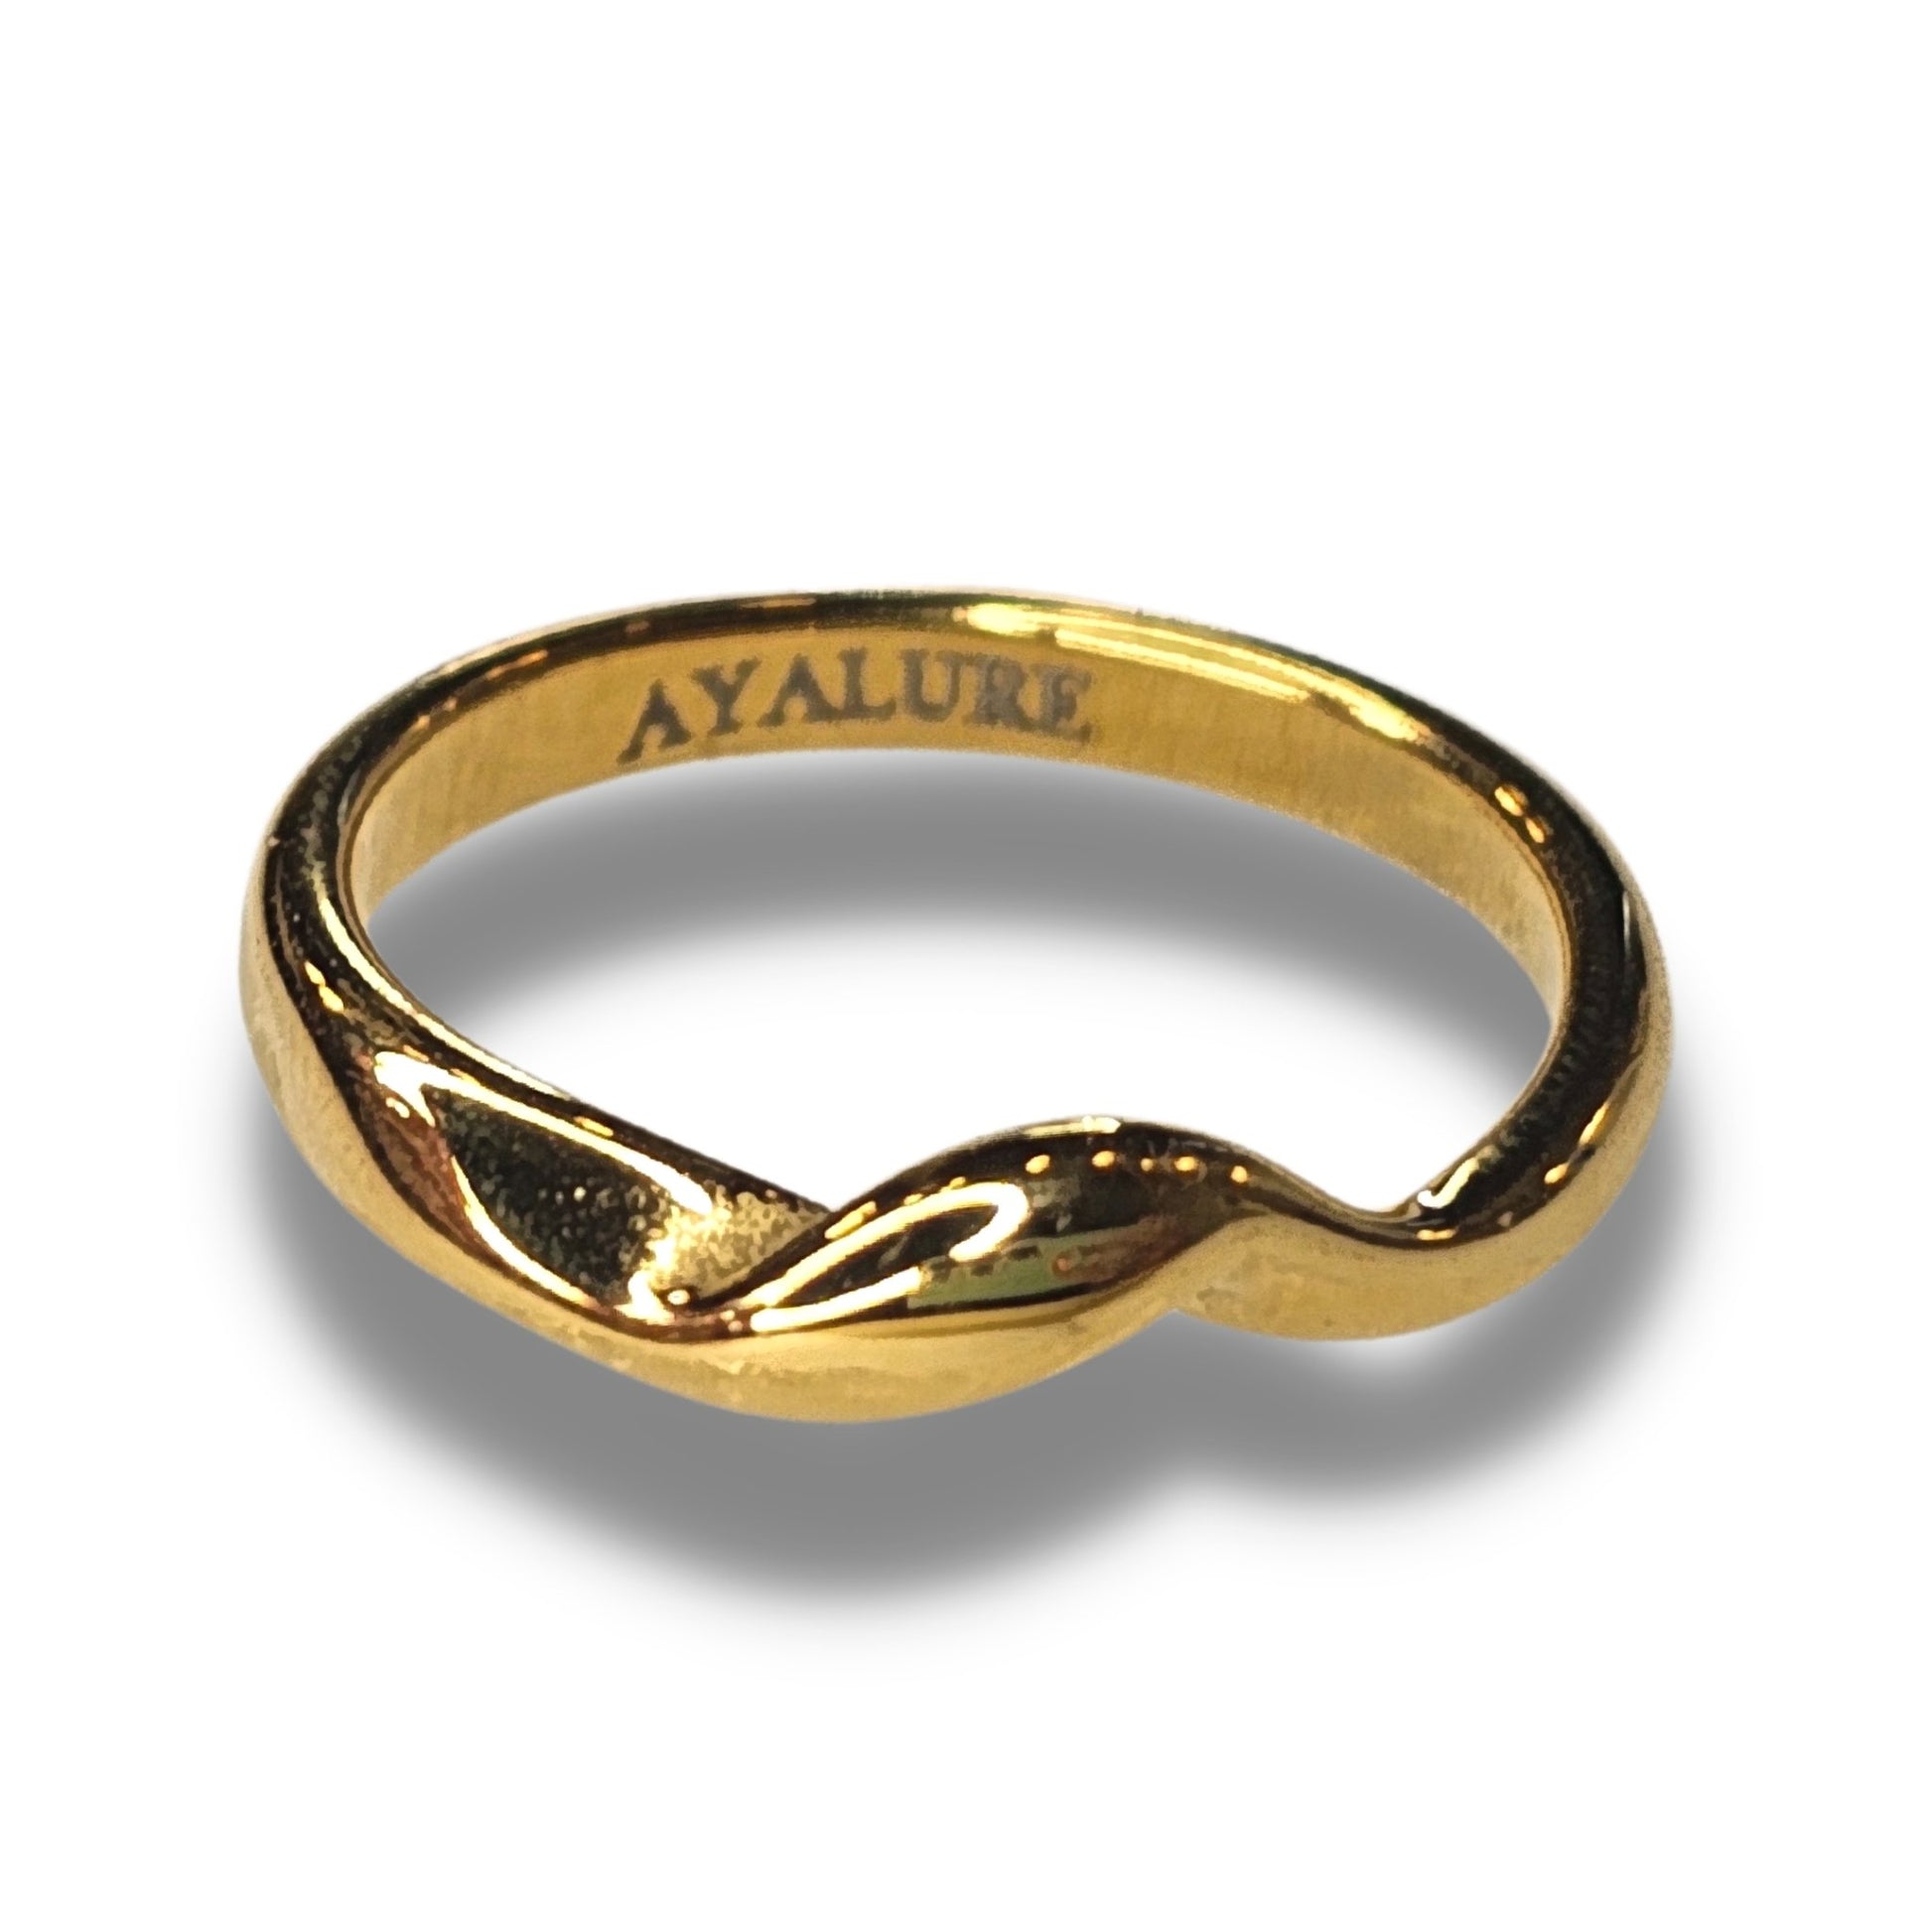 Golden Wave Ring